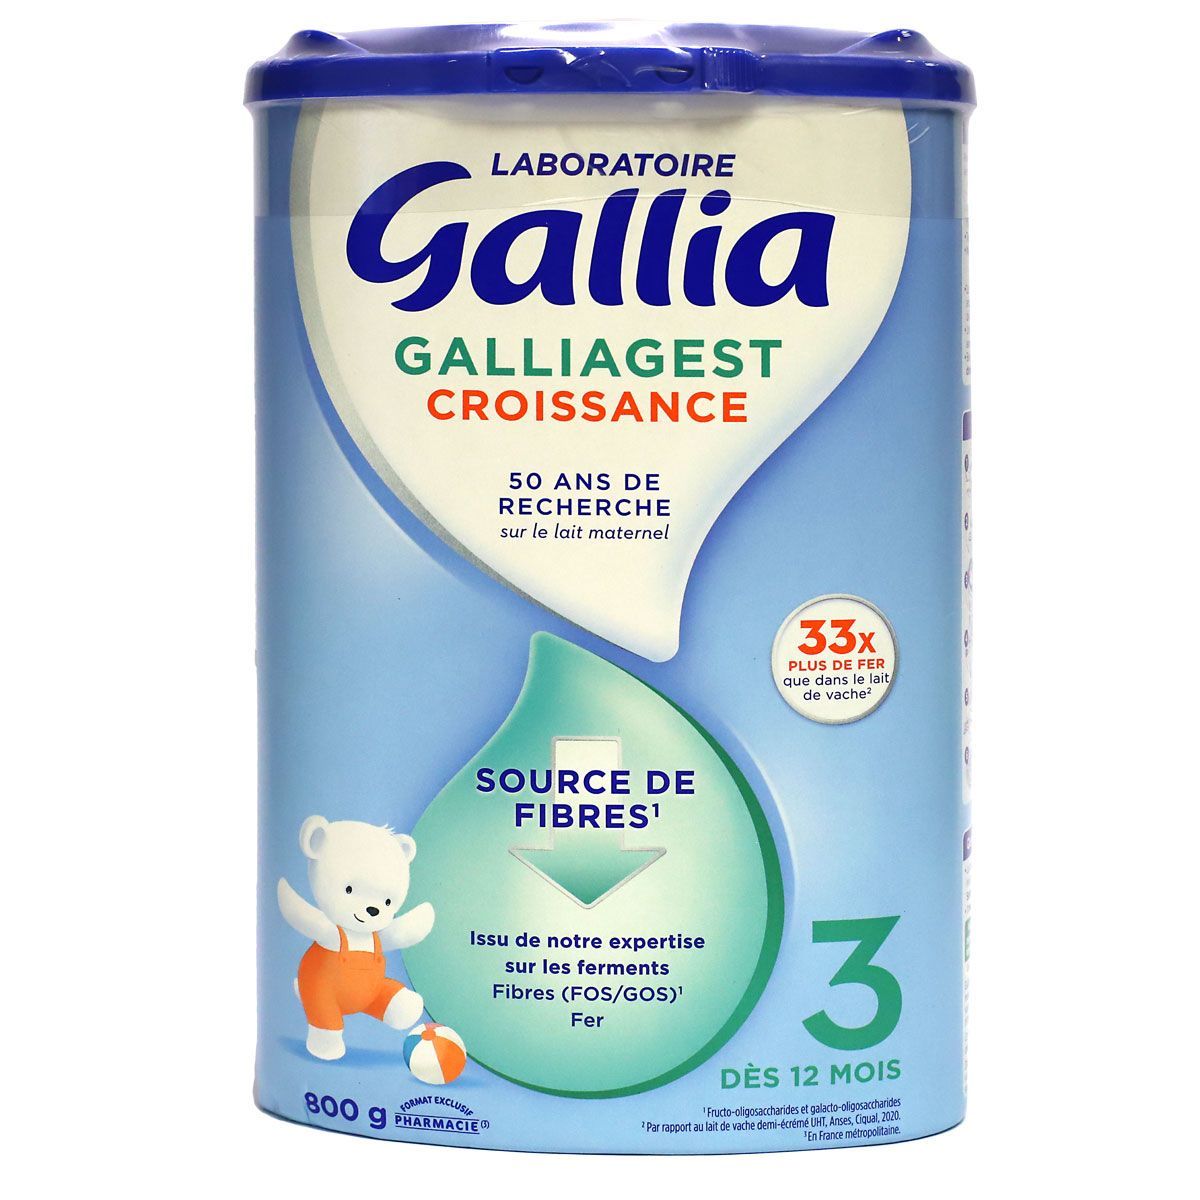 Gallia junior 4 lait à partir de 24 mois 900g - Pharmacie Grande